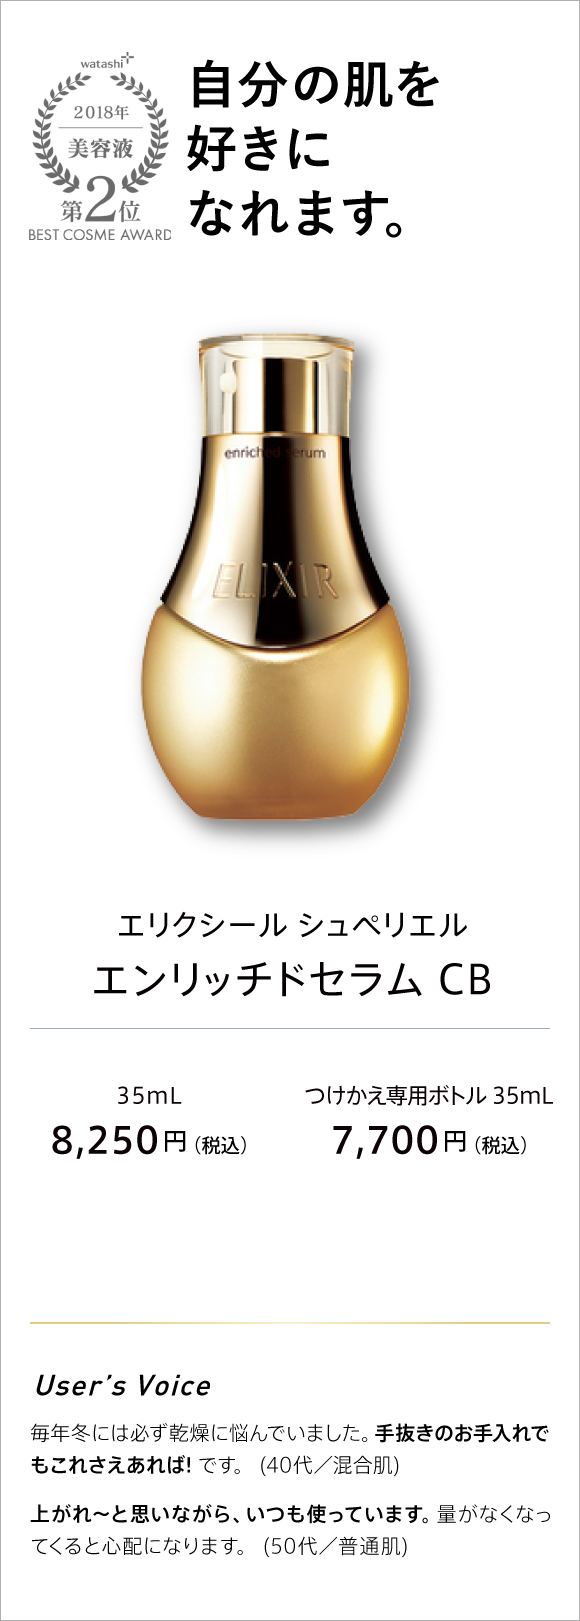 watashi+ 2018 美容液 第2位 BEST COSME AWARD 自分の肌を好きになれます。 エリクシール シュペリエル エンリッチドセラム CB 25ml 8,250(税込) 付け替え専用ボトル 35ml 7,650円(税込)